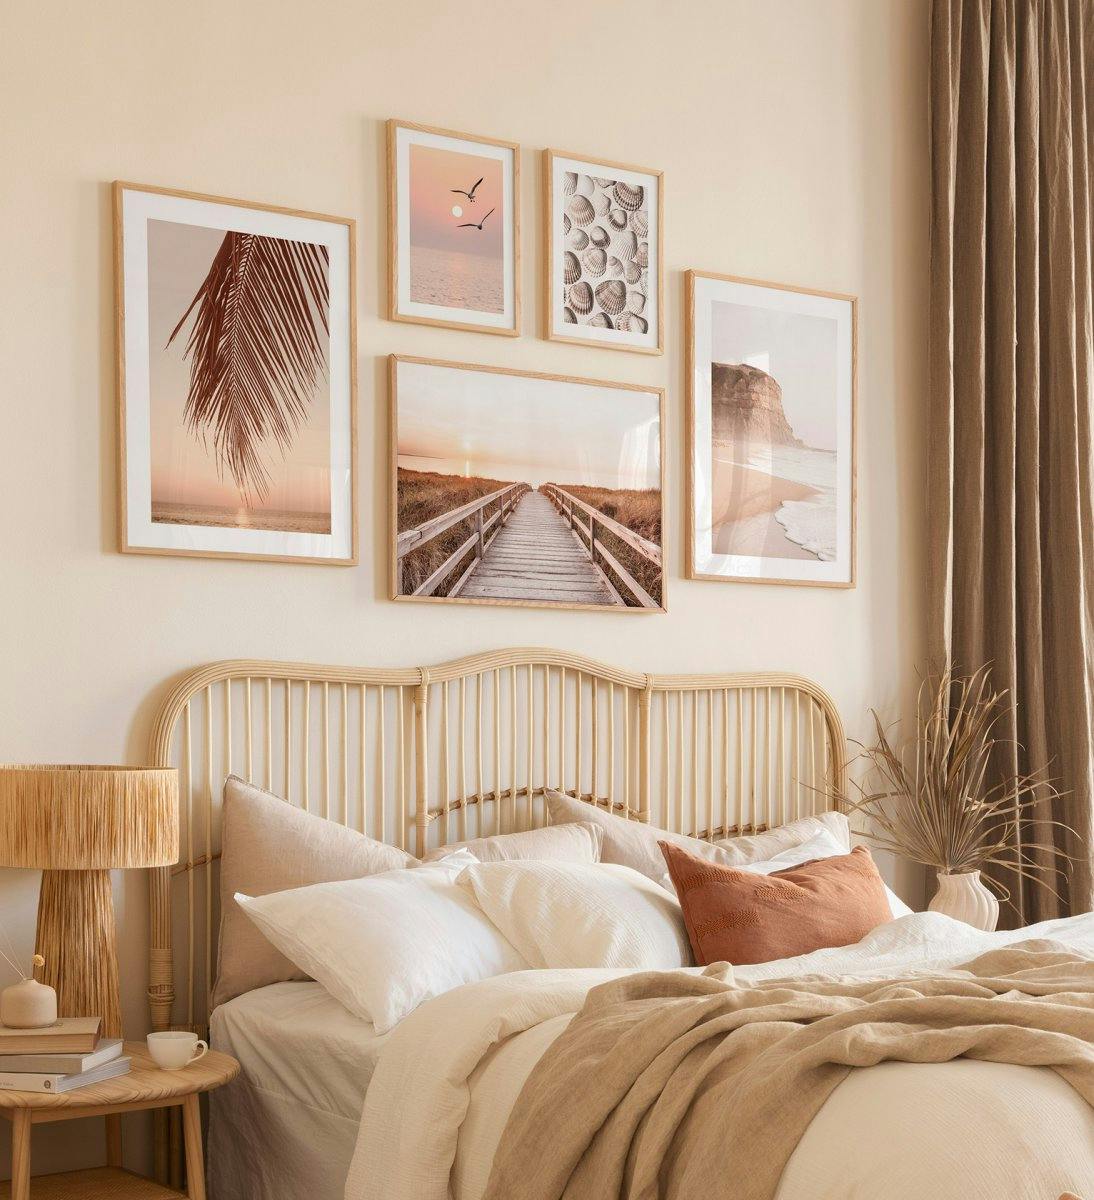 Bilderwand mit Naturmotiven, die sich ideal für das Schlafzimmer eignet, das in Eichenrahmen präsentiert wird. 